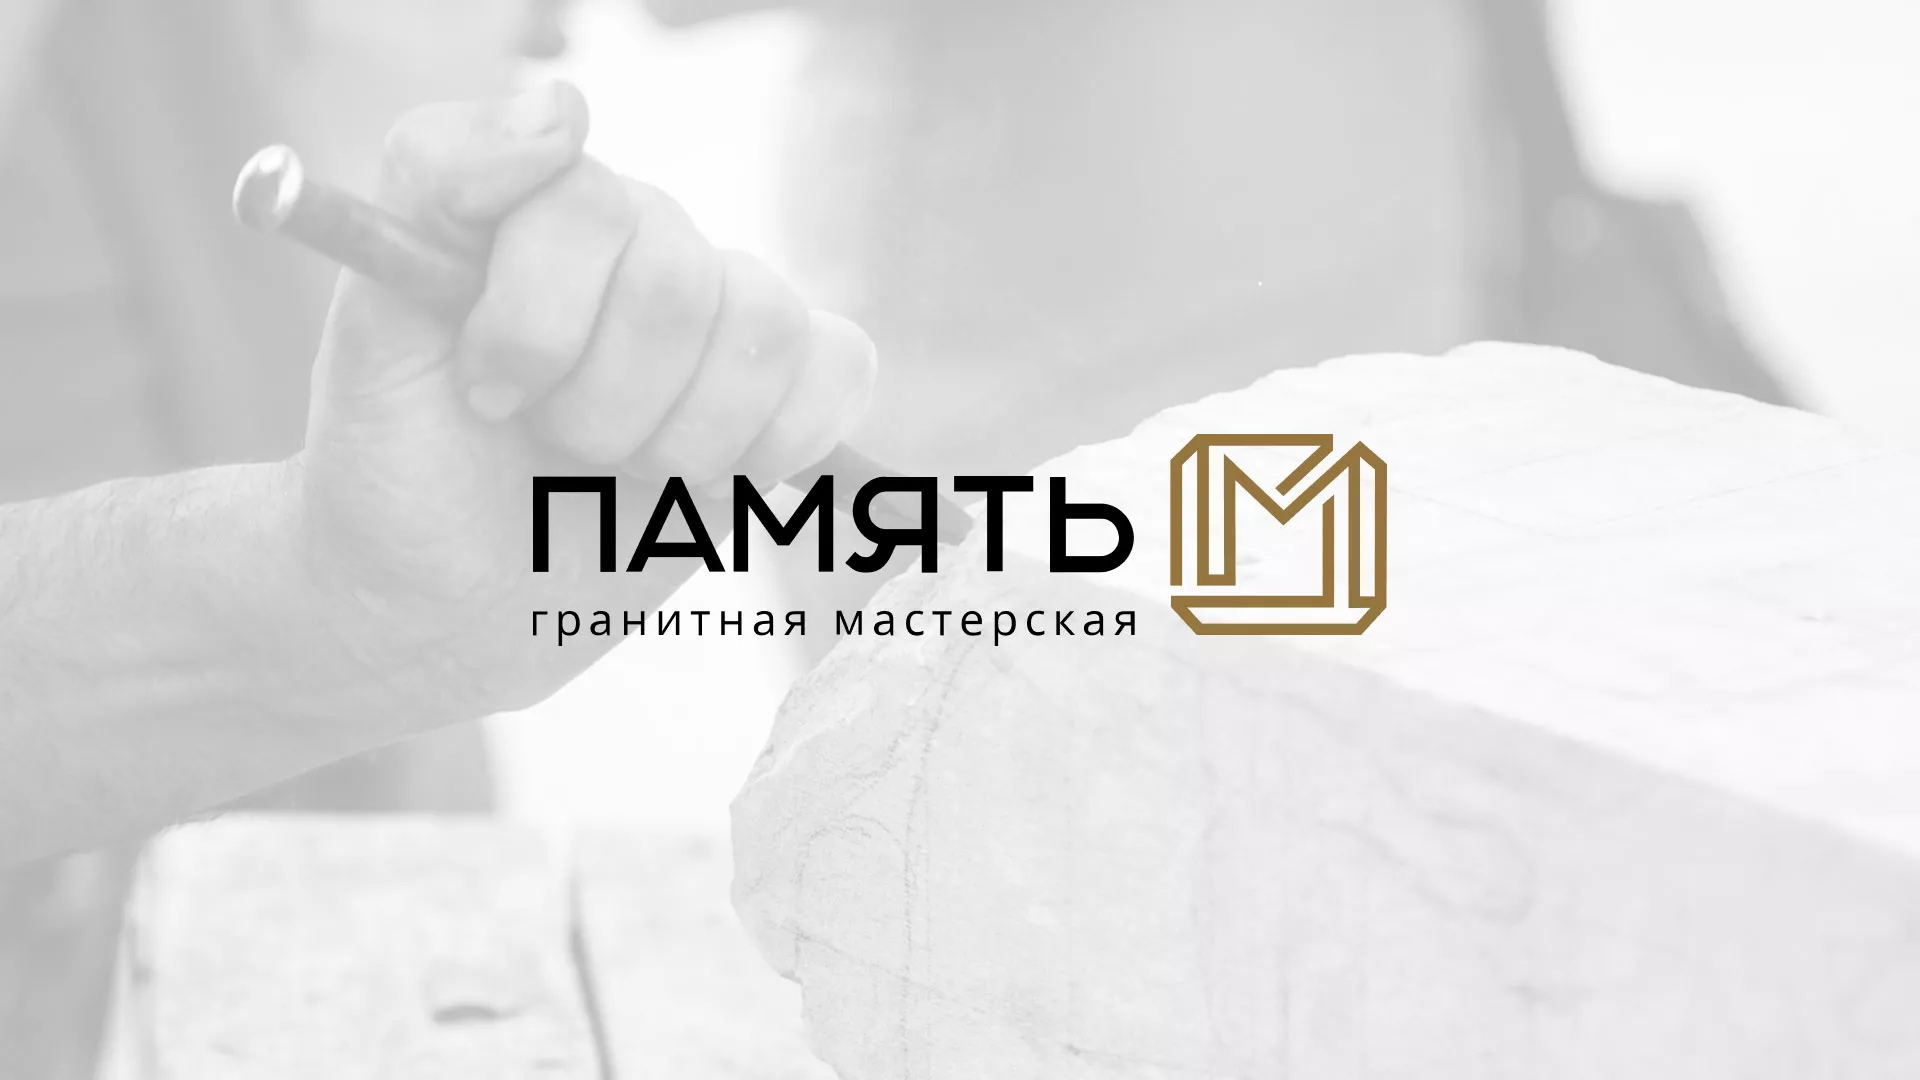 Разработка логотипа и сайта компании «Память-М» в Николаевске-на-Амуре